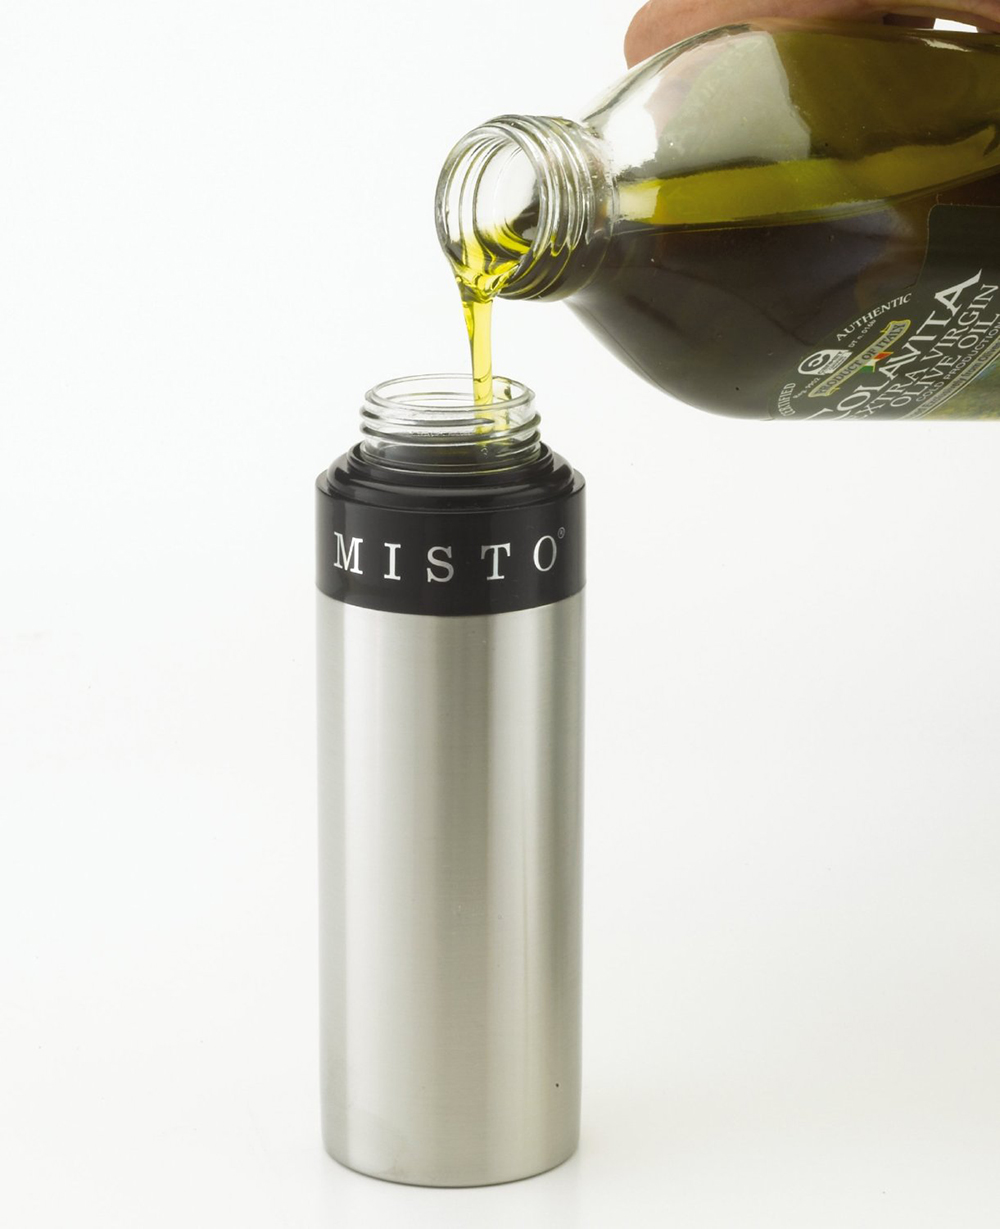 Misto Olivenöl-Sprühflasche aus gebürstetem Aluminium (2)